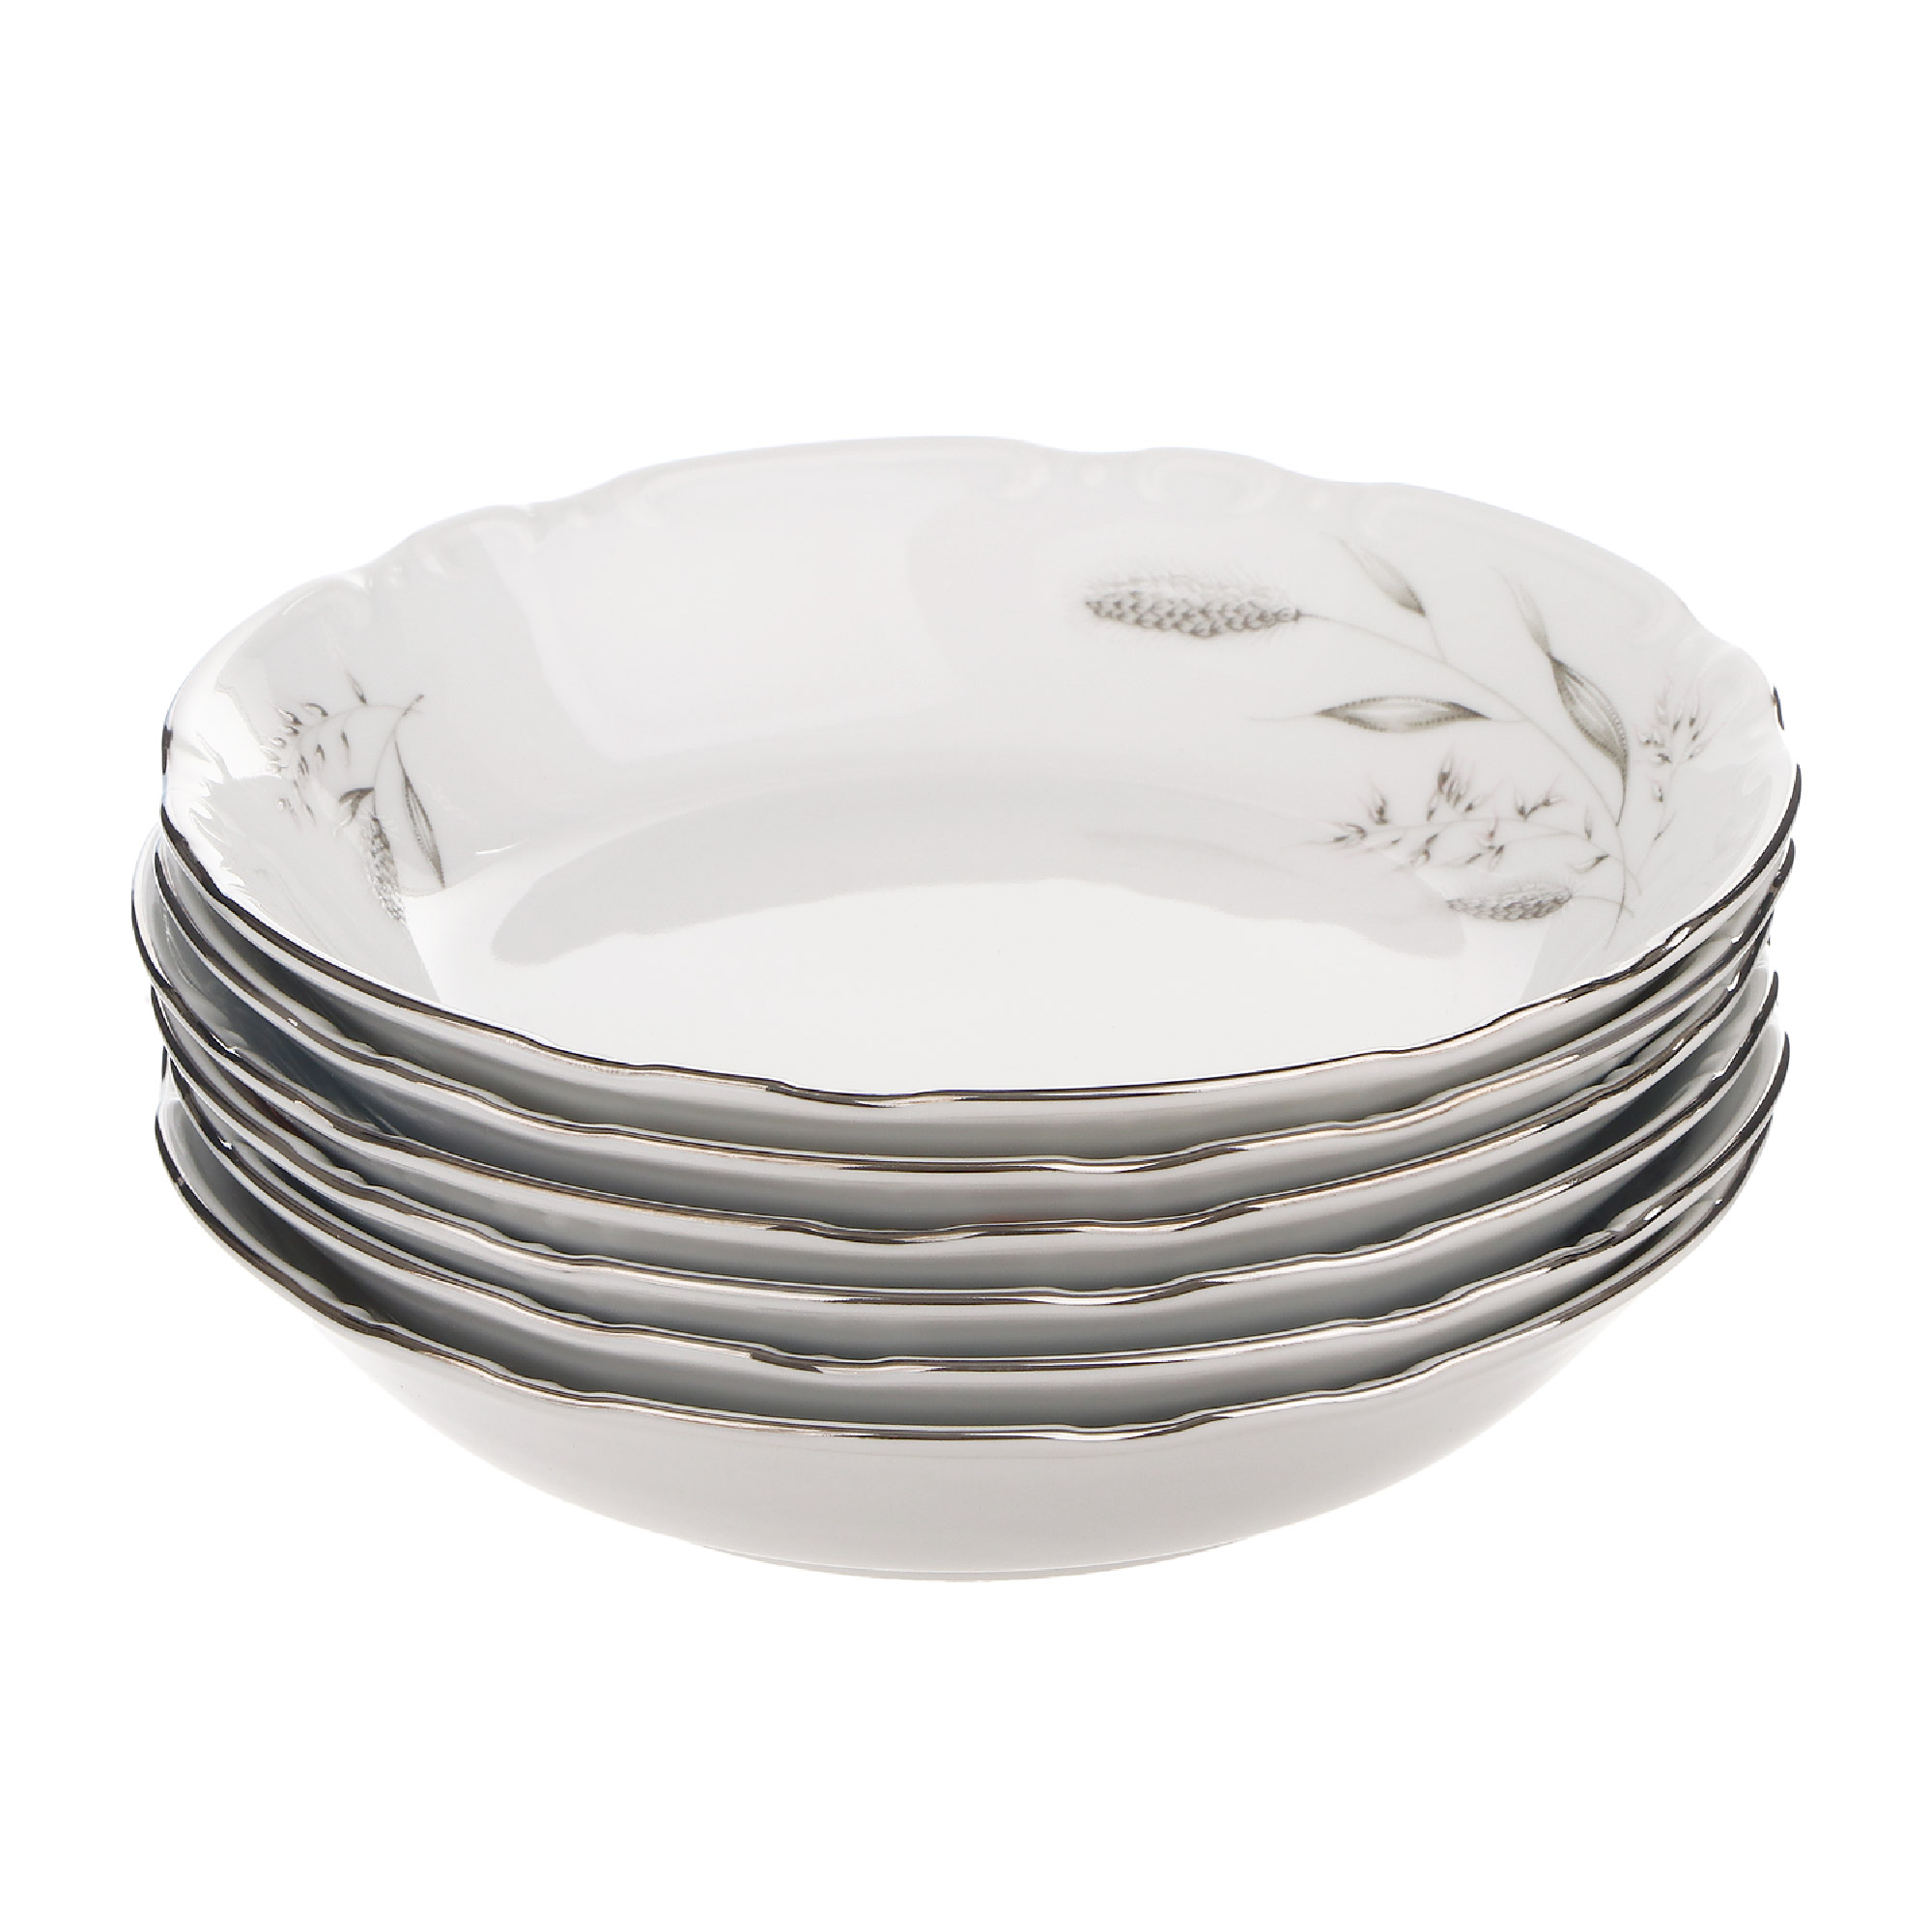 Набор тарелок Thun1794 Coupsoup декор серебряные колосья, отводка платина 19 см 6 шт салатник 25 см thun1794 декор серебряные колосья отводка платина